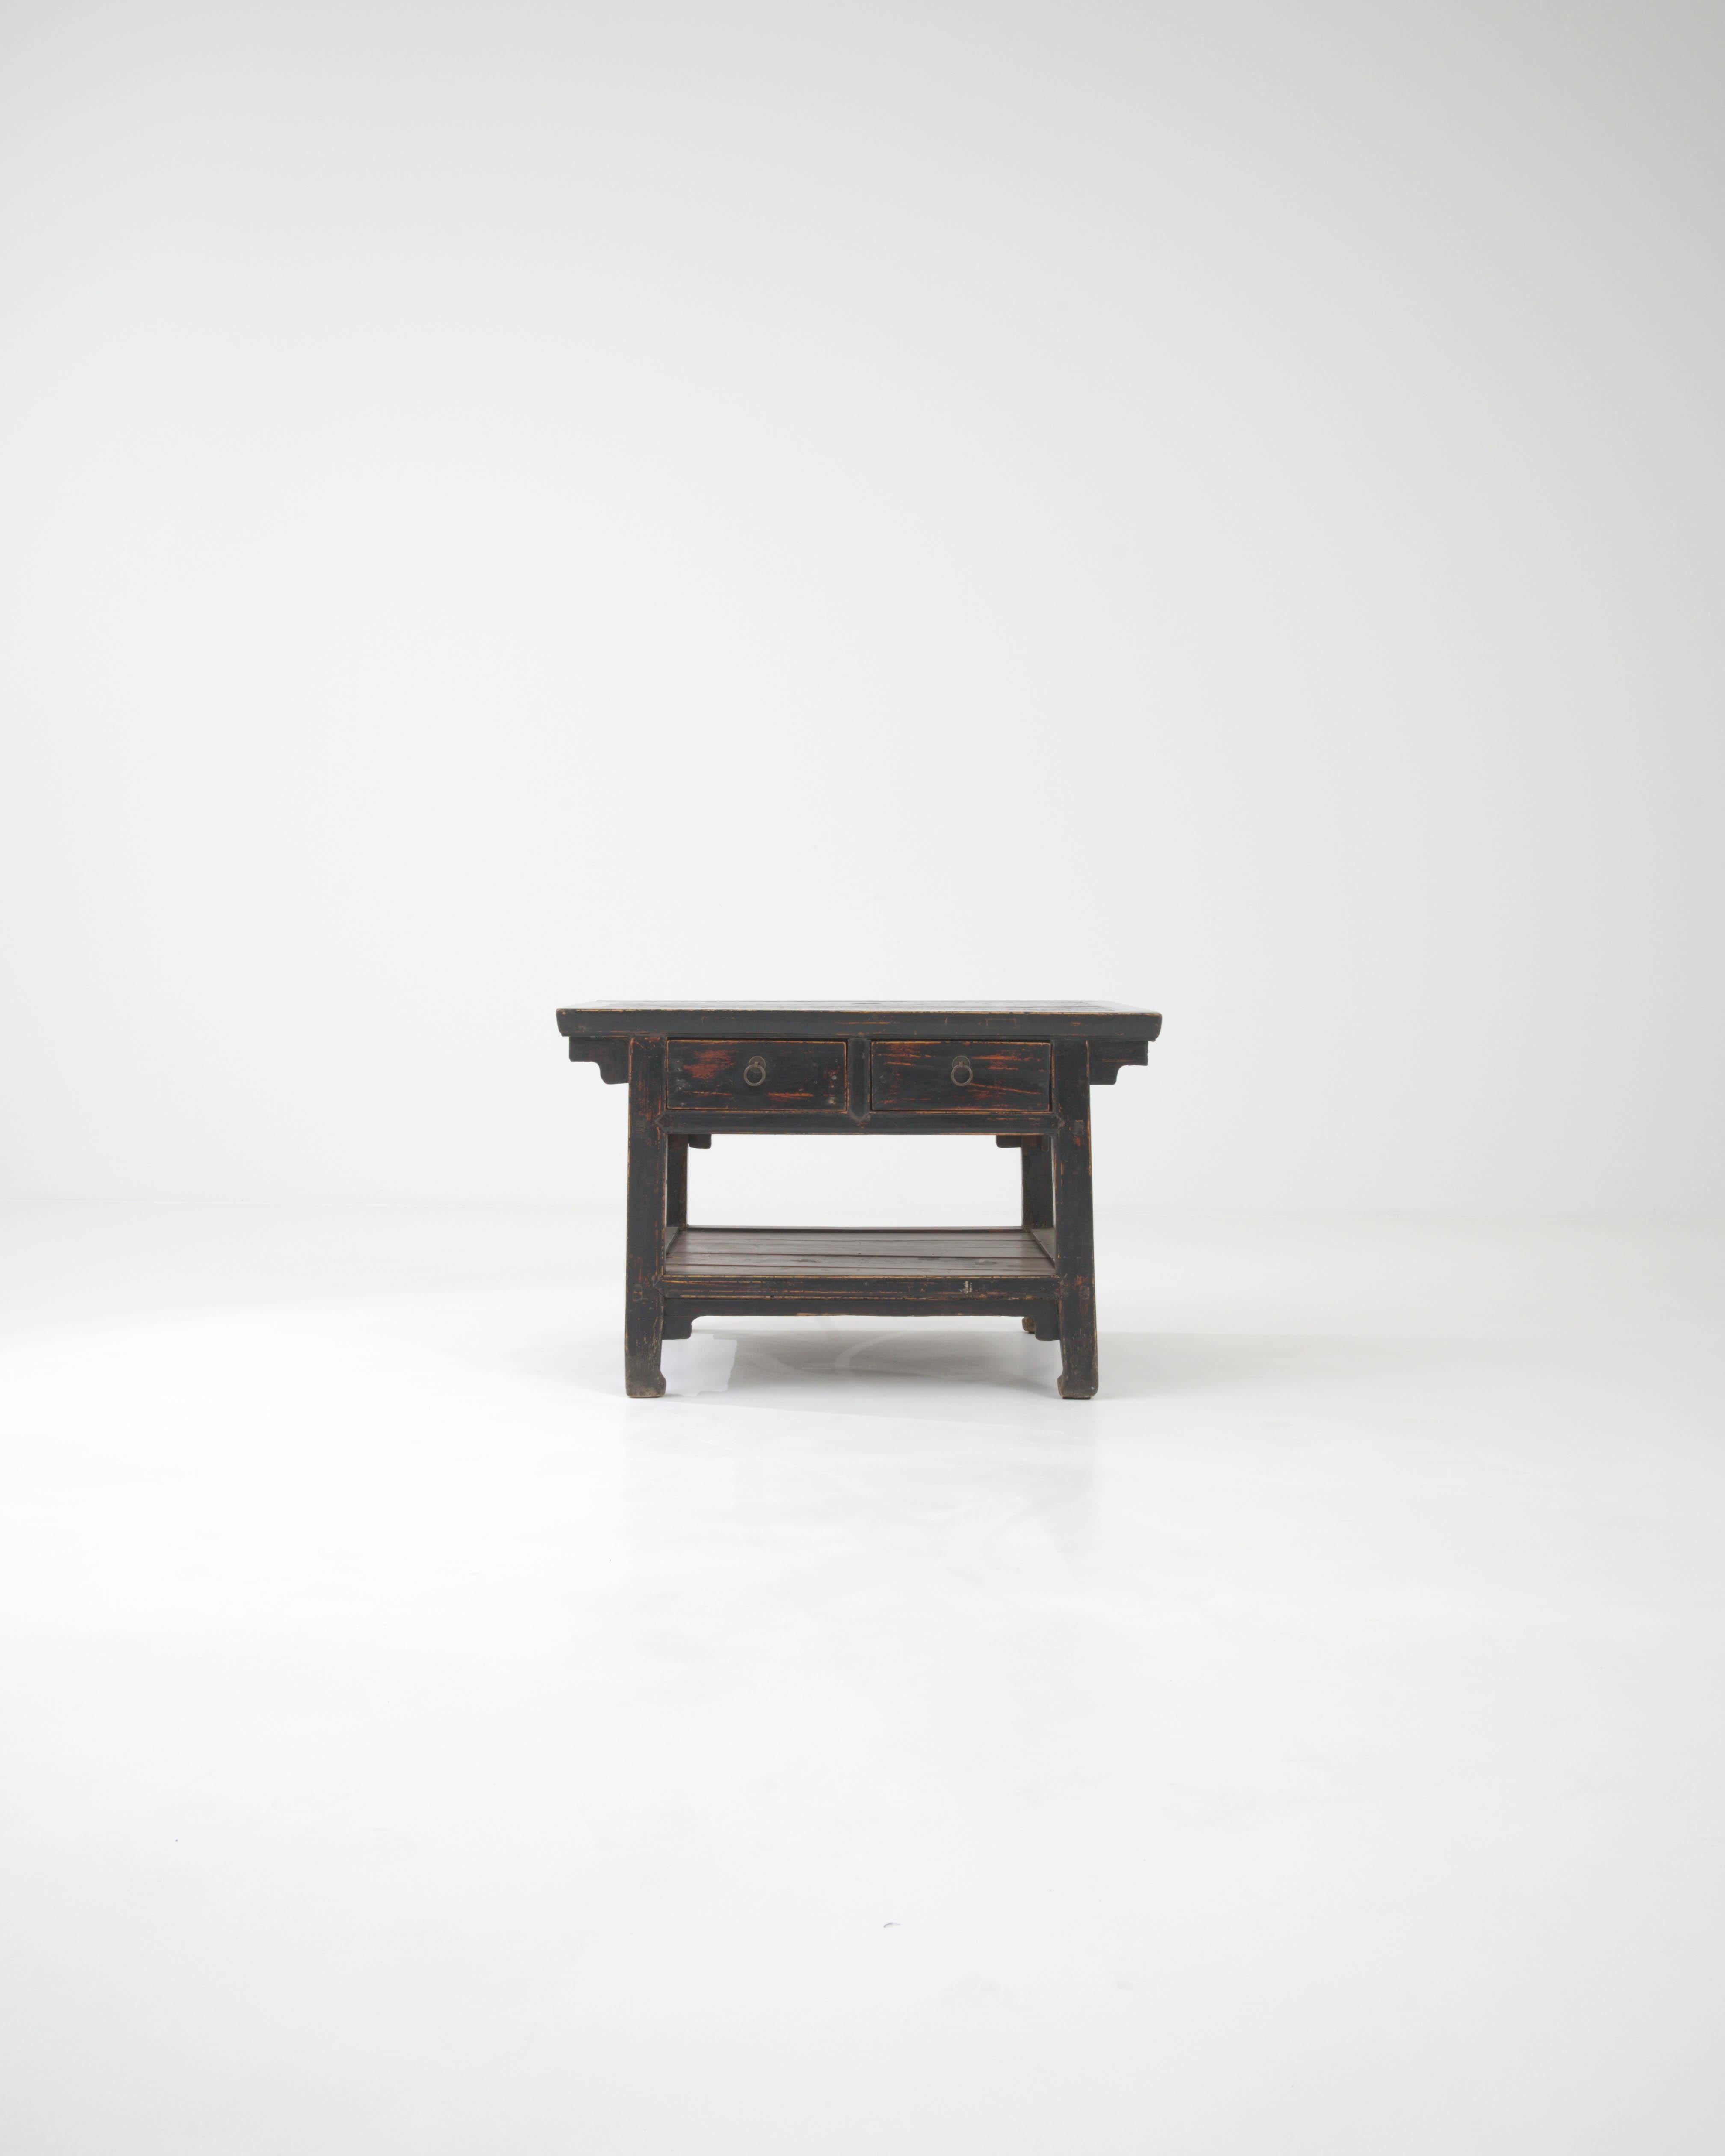 Cette table basse chinoise du XIXe siècle est une pièce magnifique qui allie harmonieusement fonctionnalité et tradition ancienne. Fabriqué en bois massif, son design reflète l'aspect pratique et les sensibilités esthétiques de l'époque, avec des